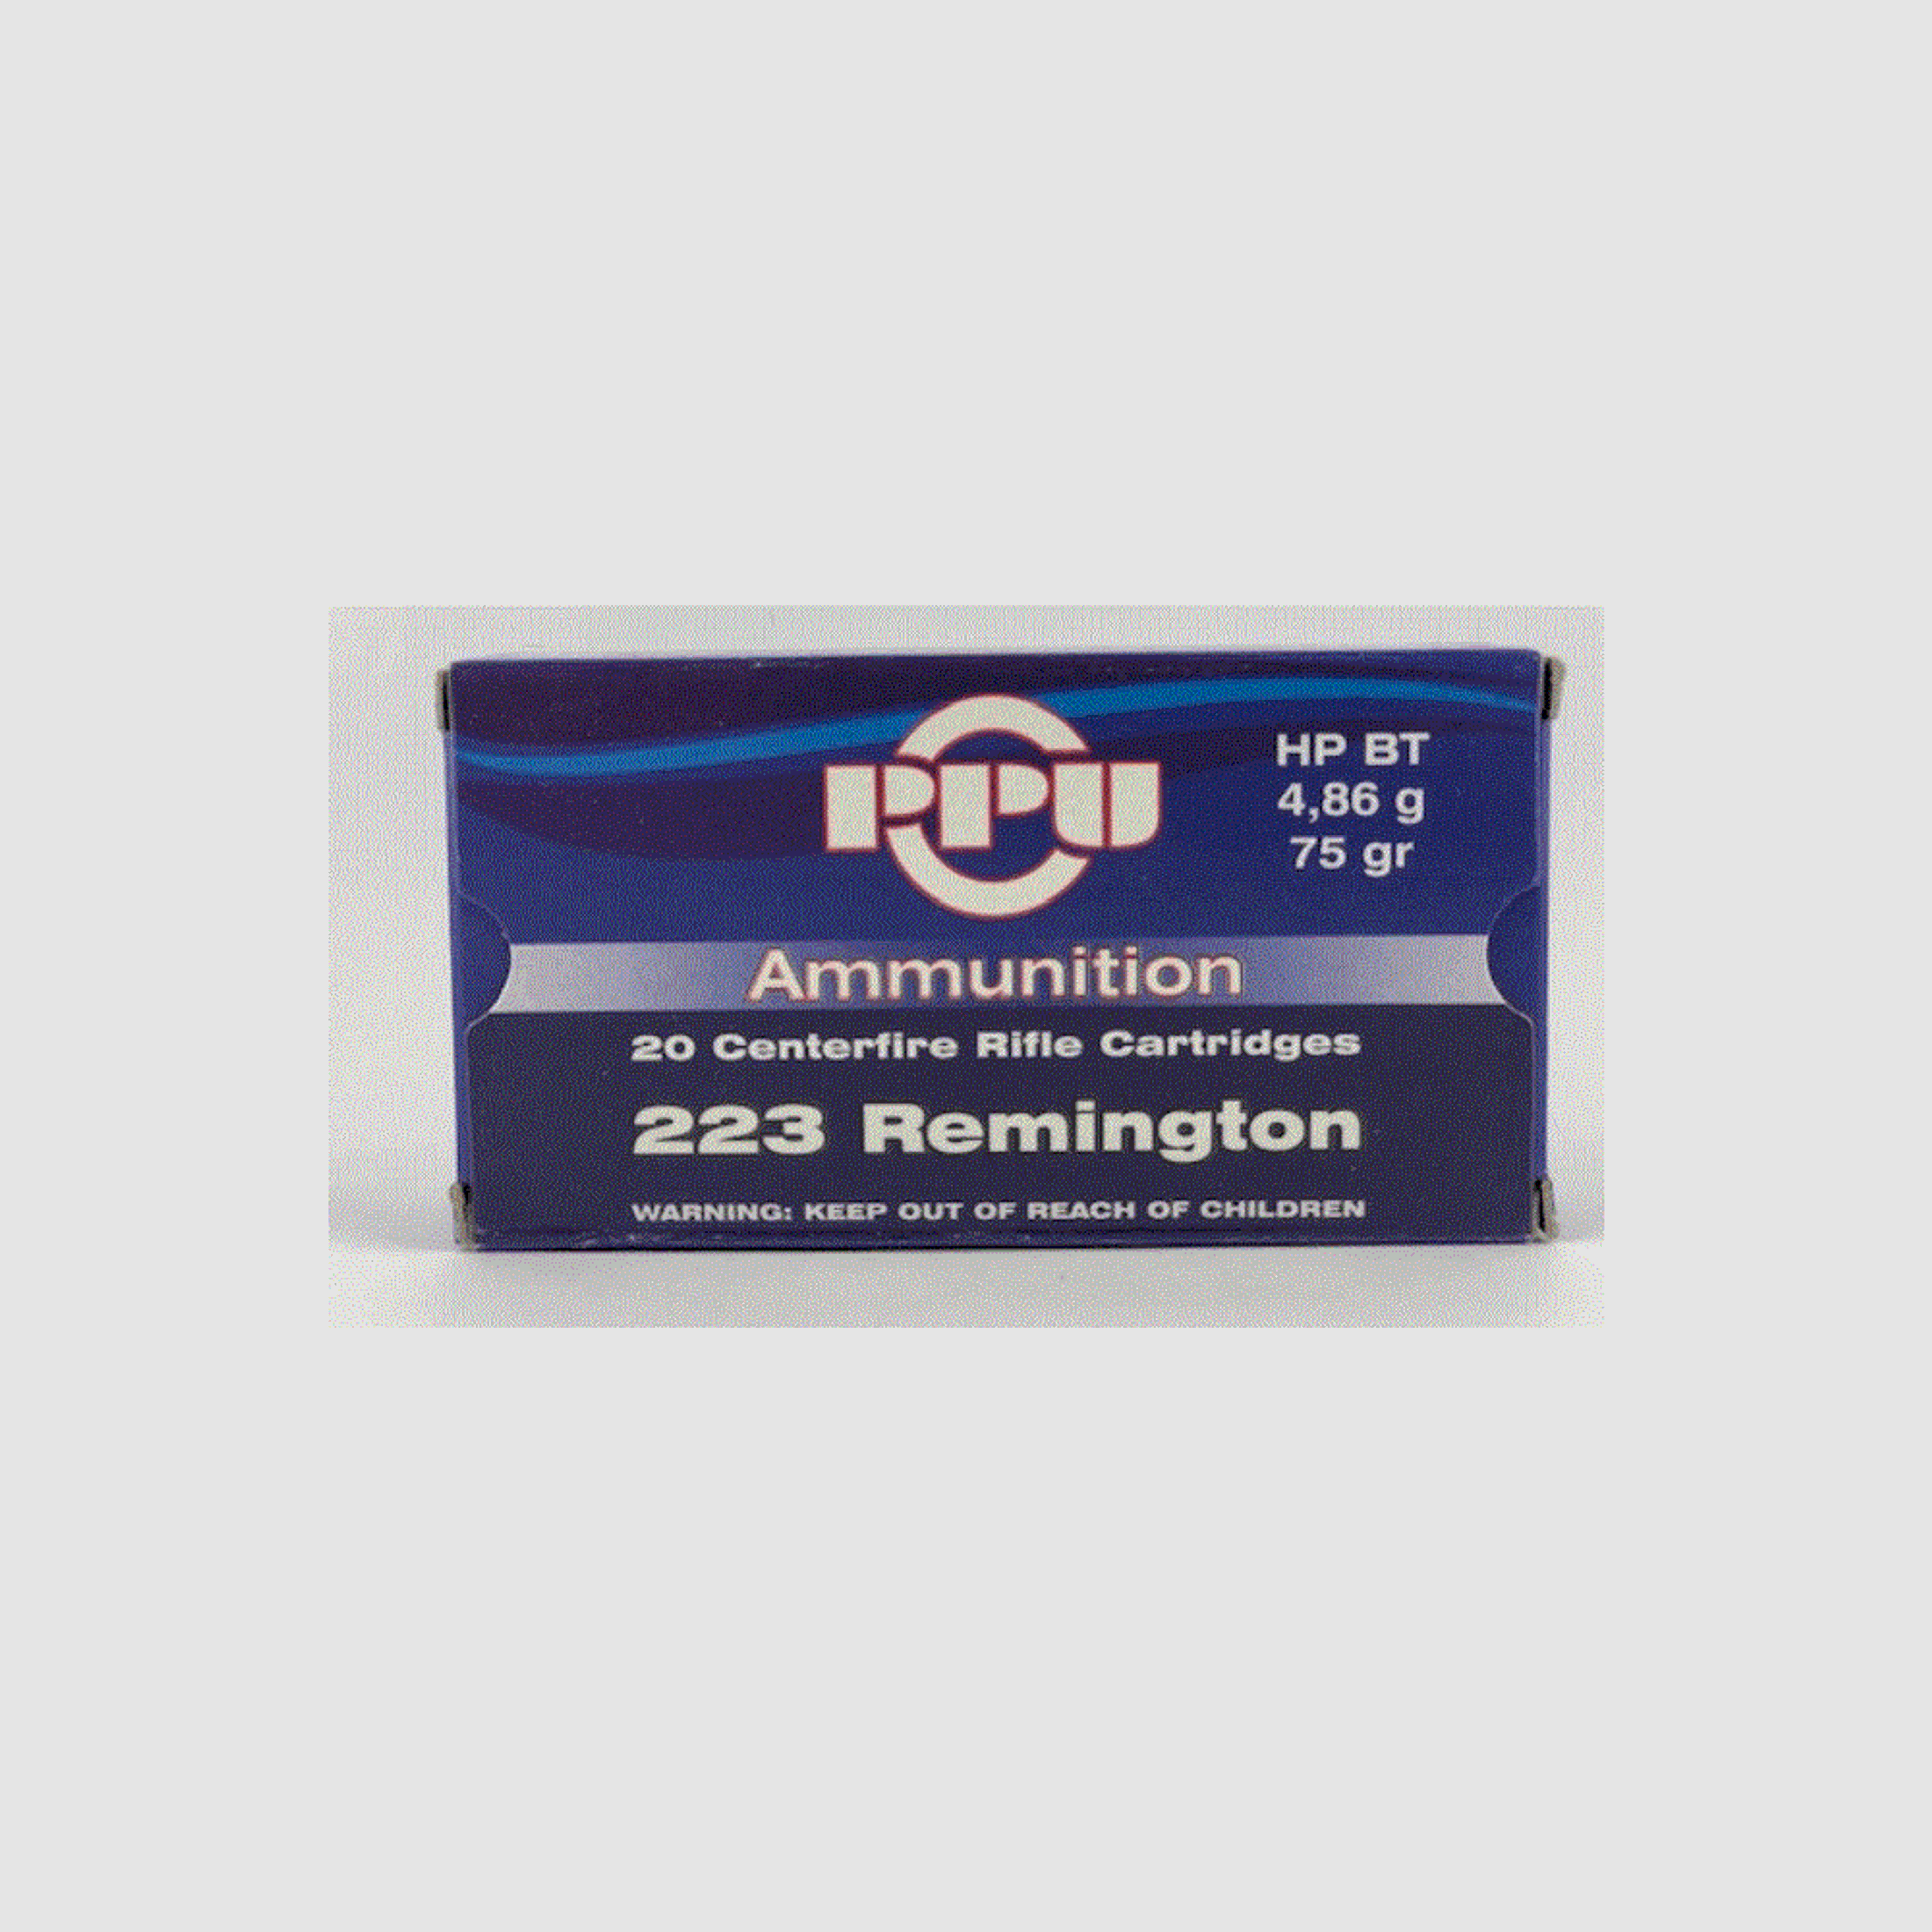 PPU .223 Remington 4,86g – 75grs – HP BT